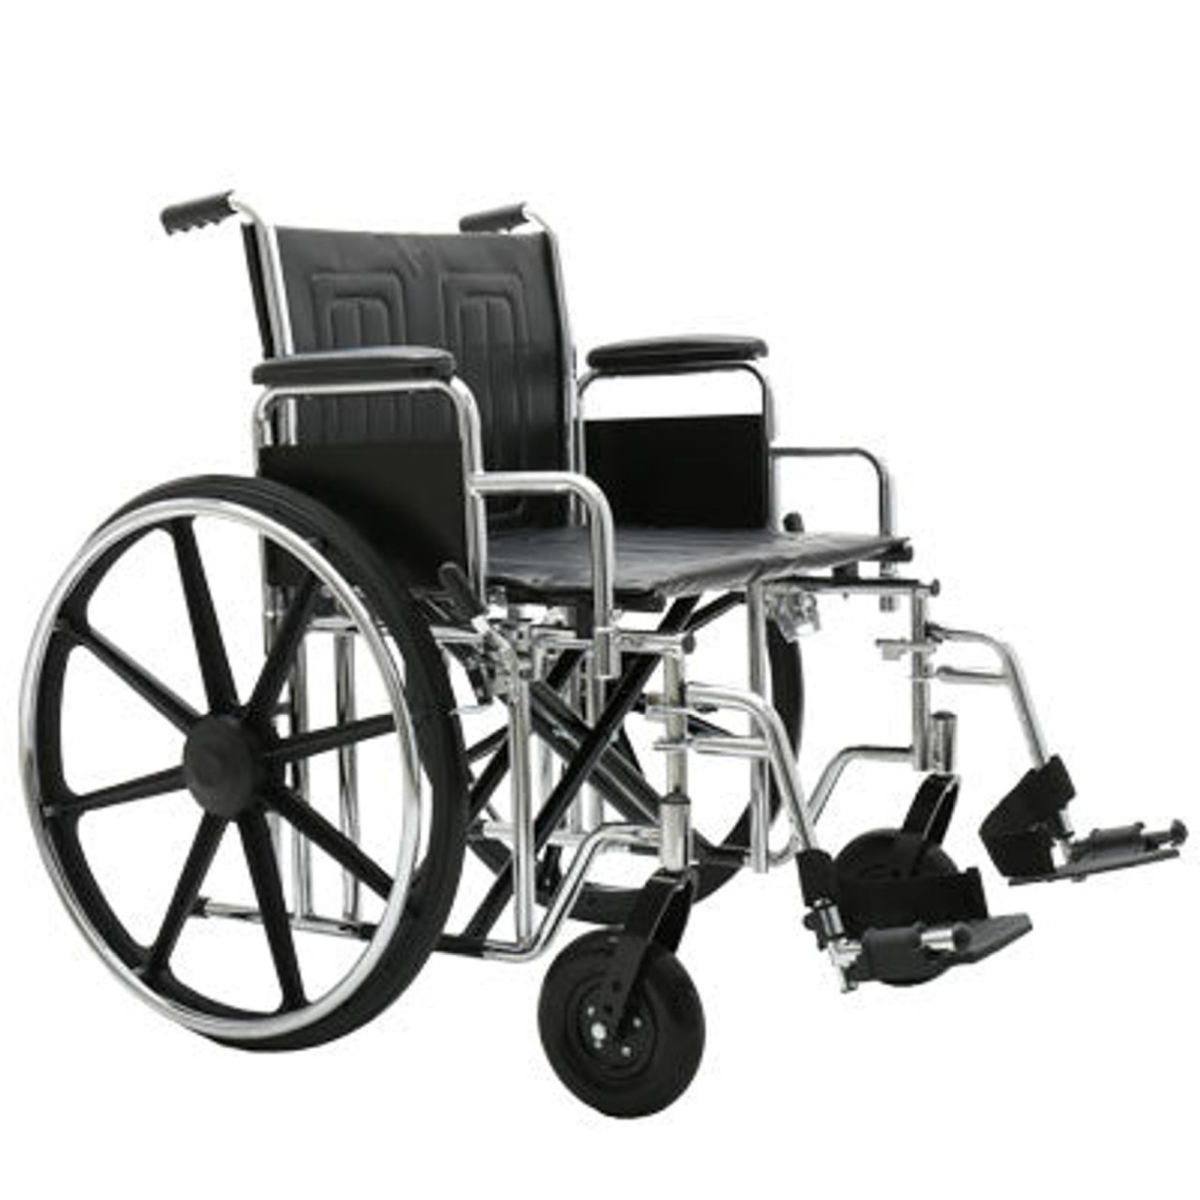 Bariatric manual wheelchair